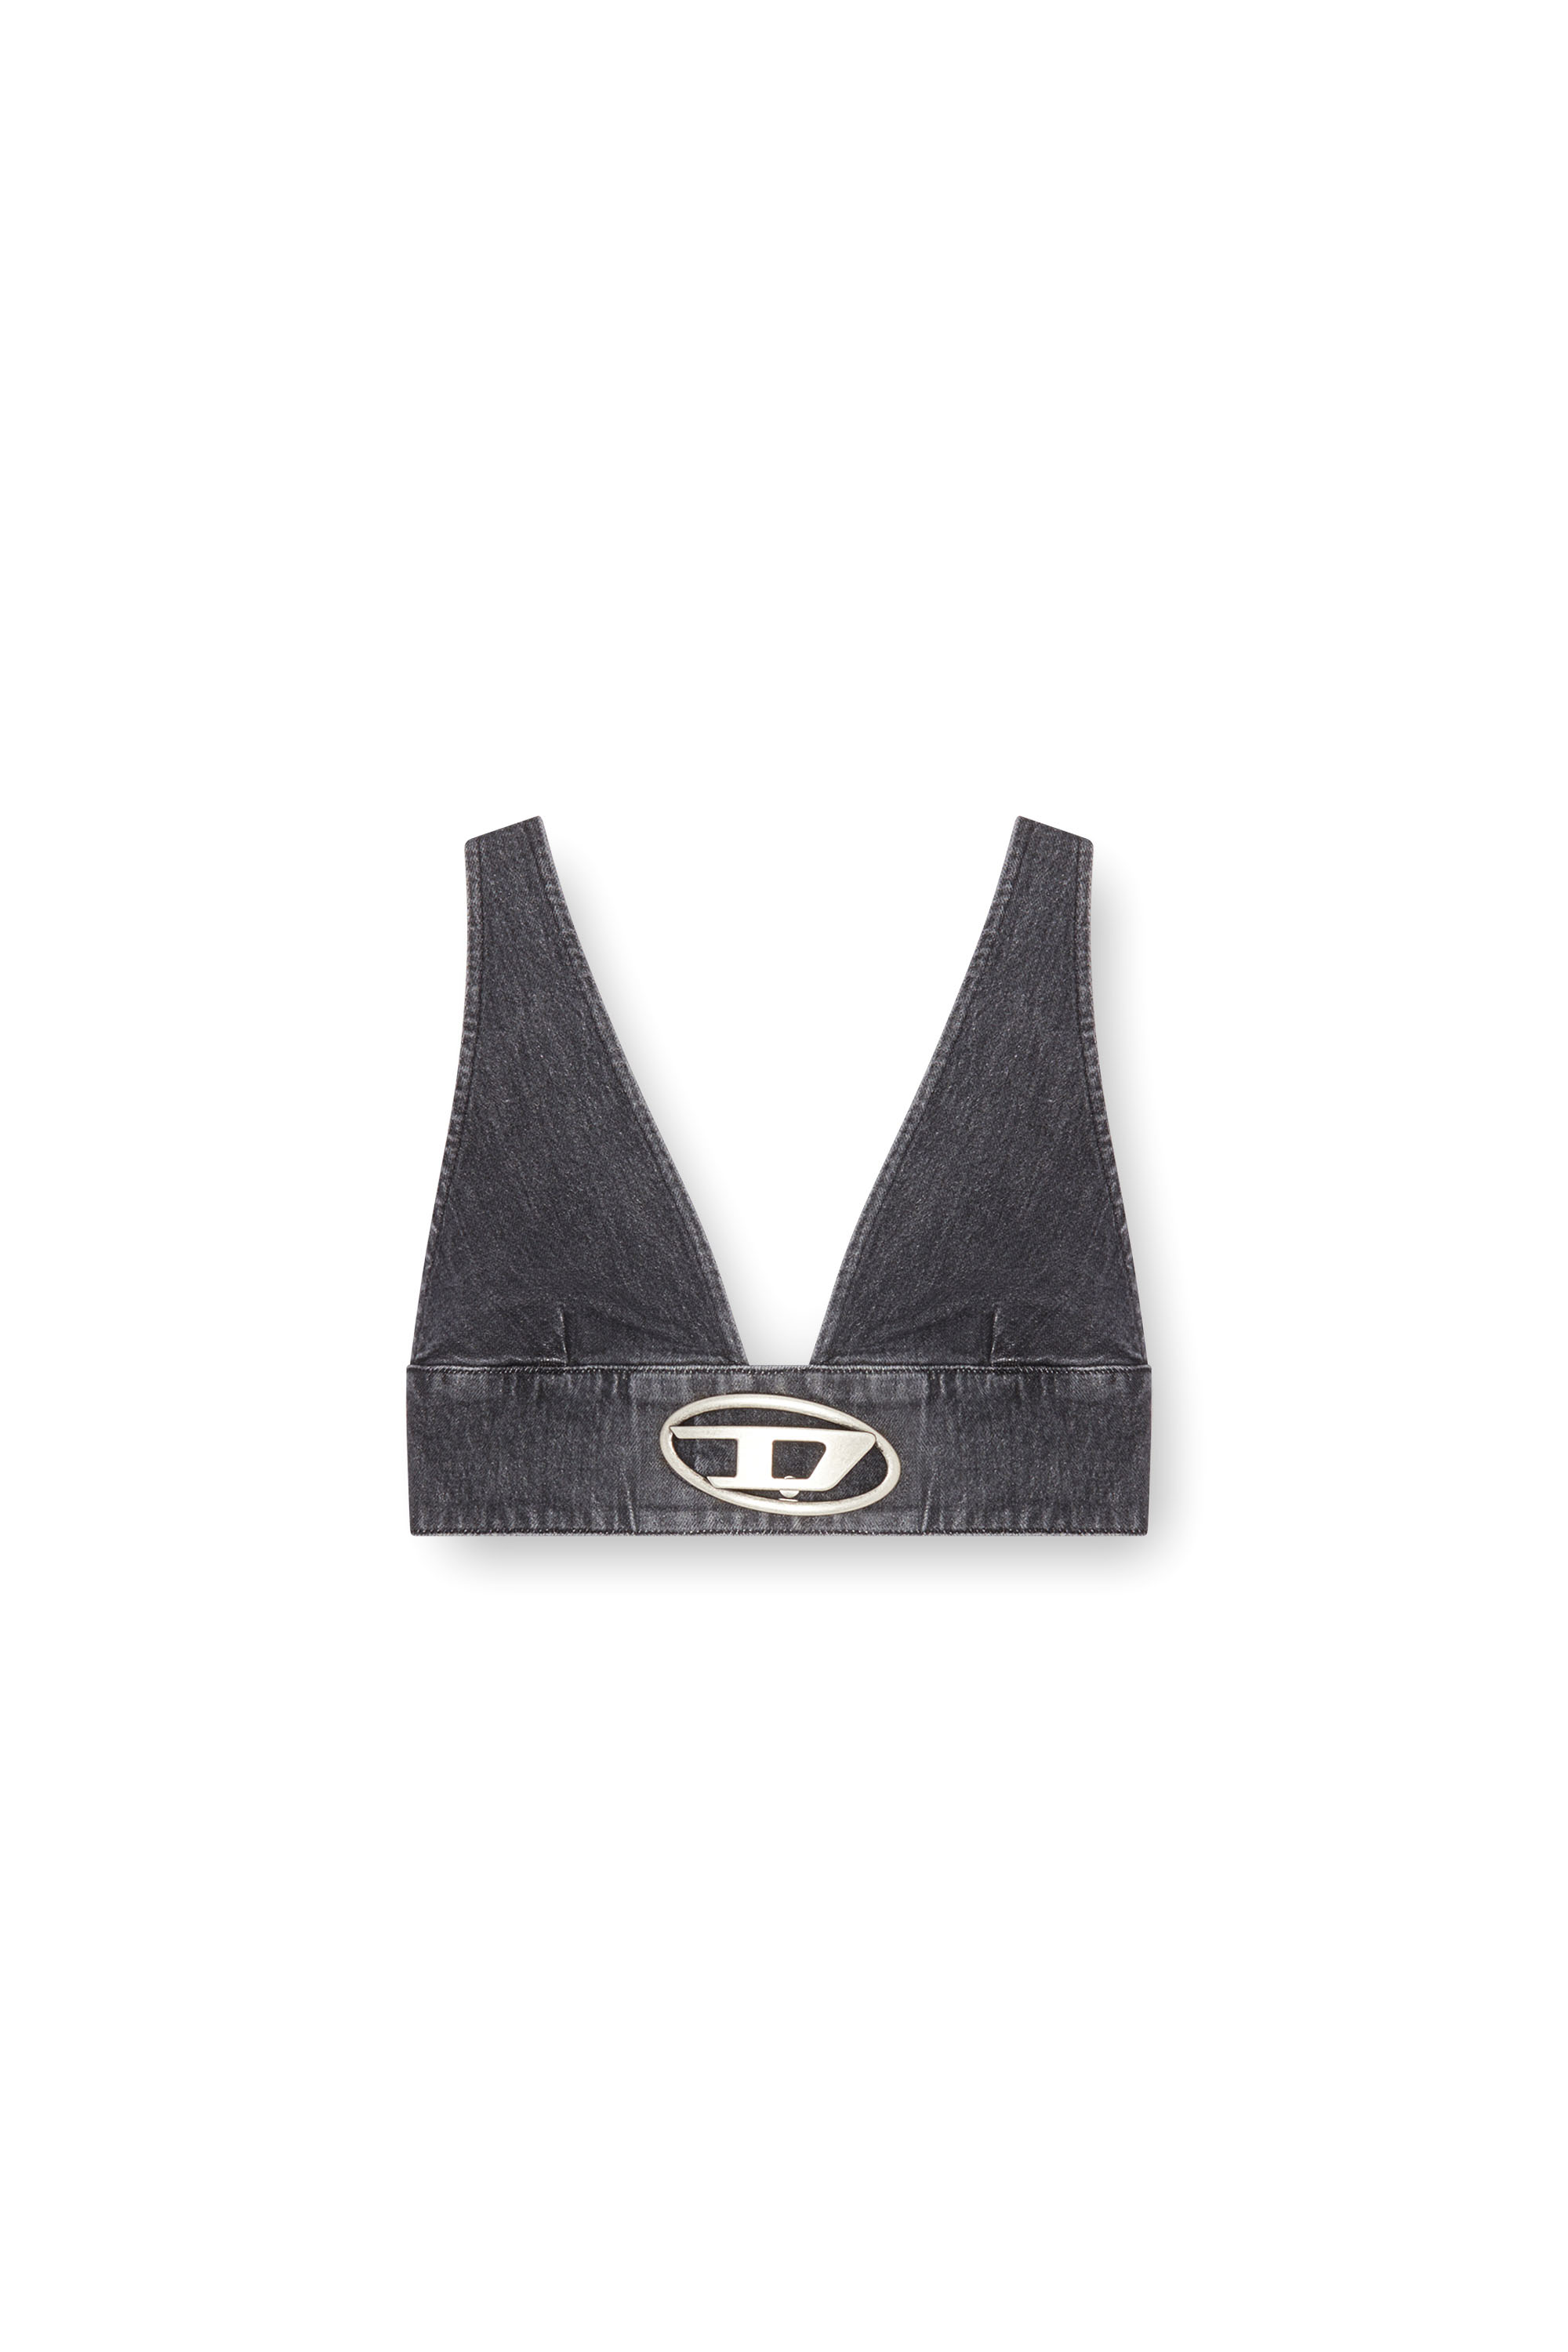 Diesel - DE-ELLY-S, Damen BH-Top aus Denim mit Oval D-Plakette in Schwarz - Image 3